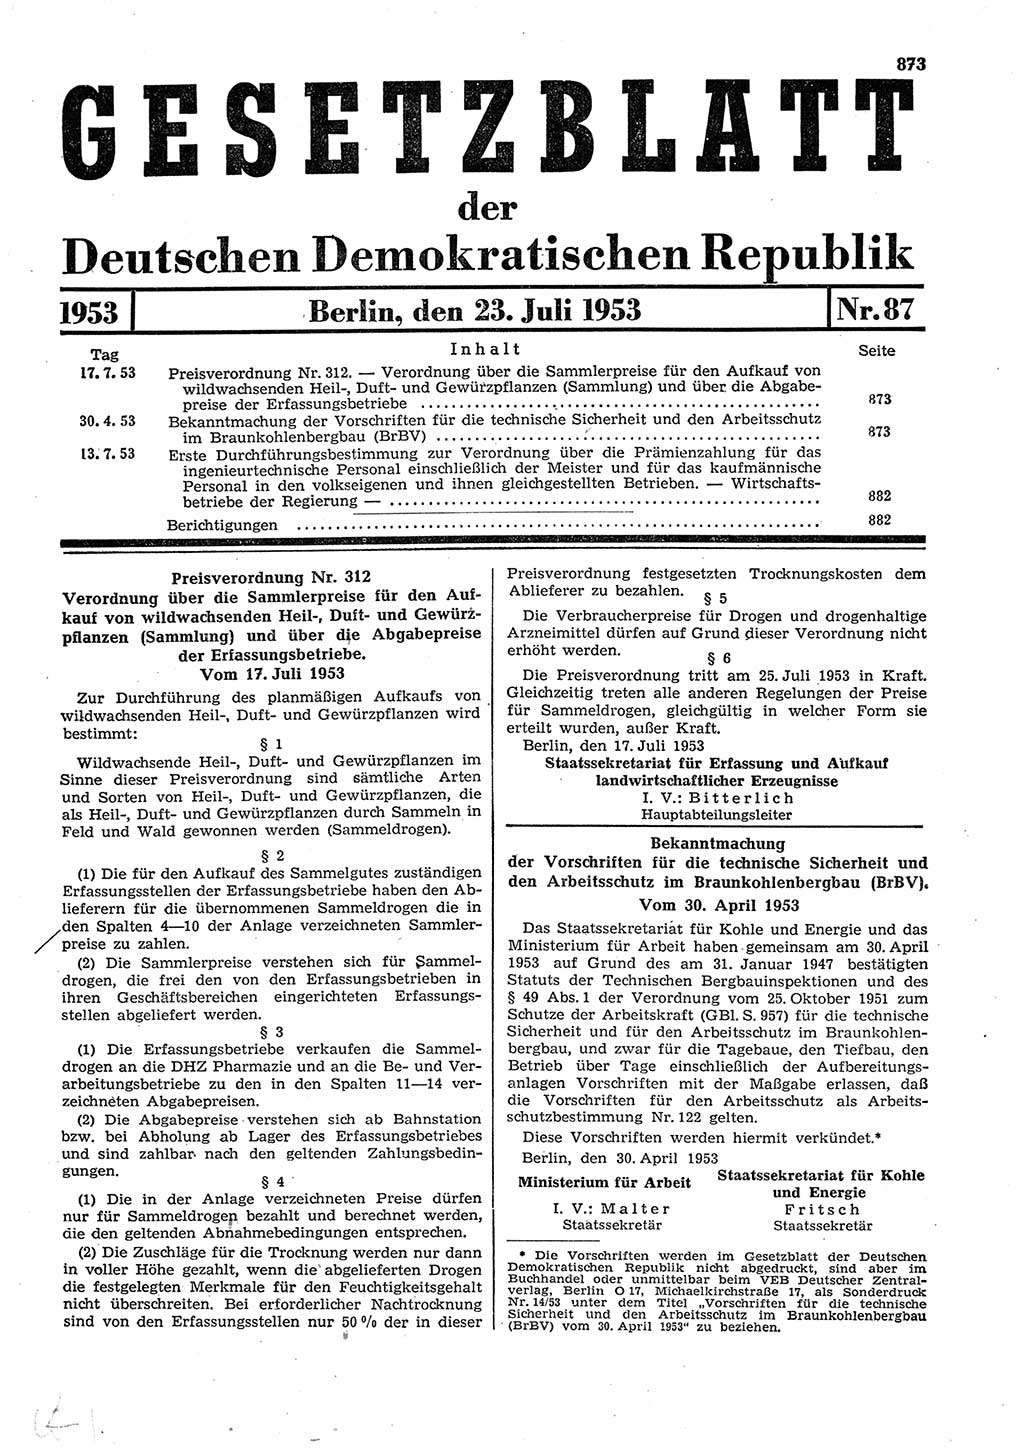 Gesetzblatt (GBl.) der Deutschen Demokratischen Republik (DDR) 1953, Seite 873 (GBl. DDR 1953, S. 873)